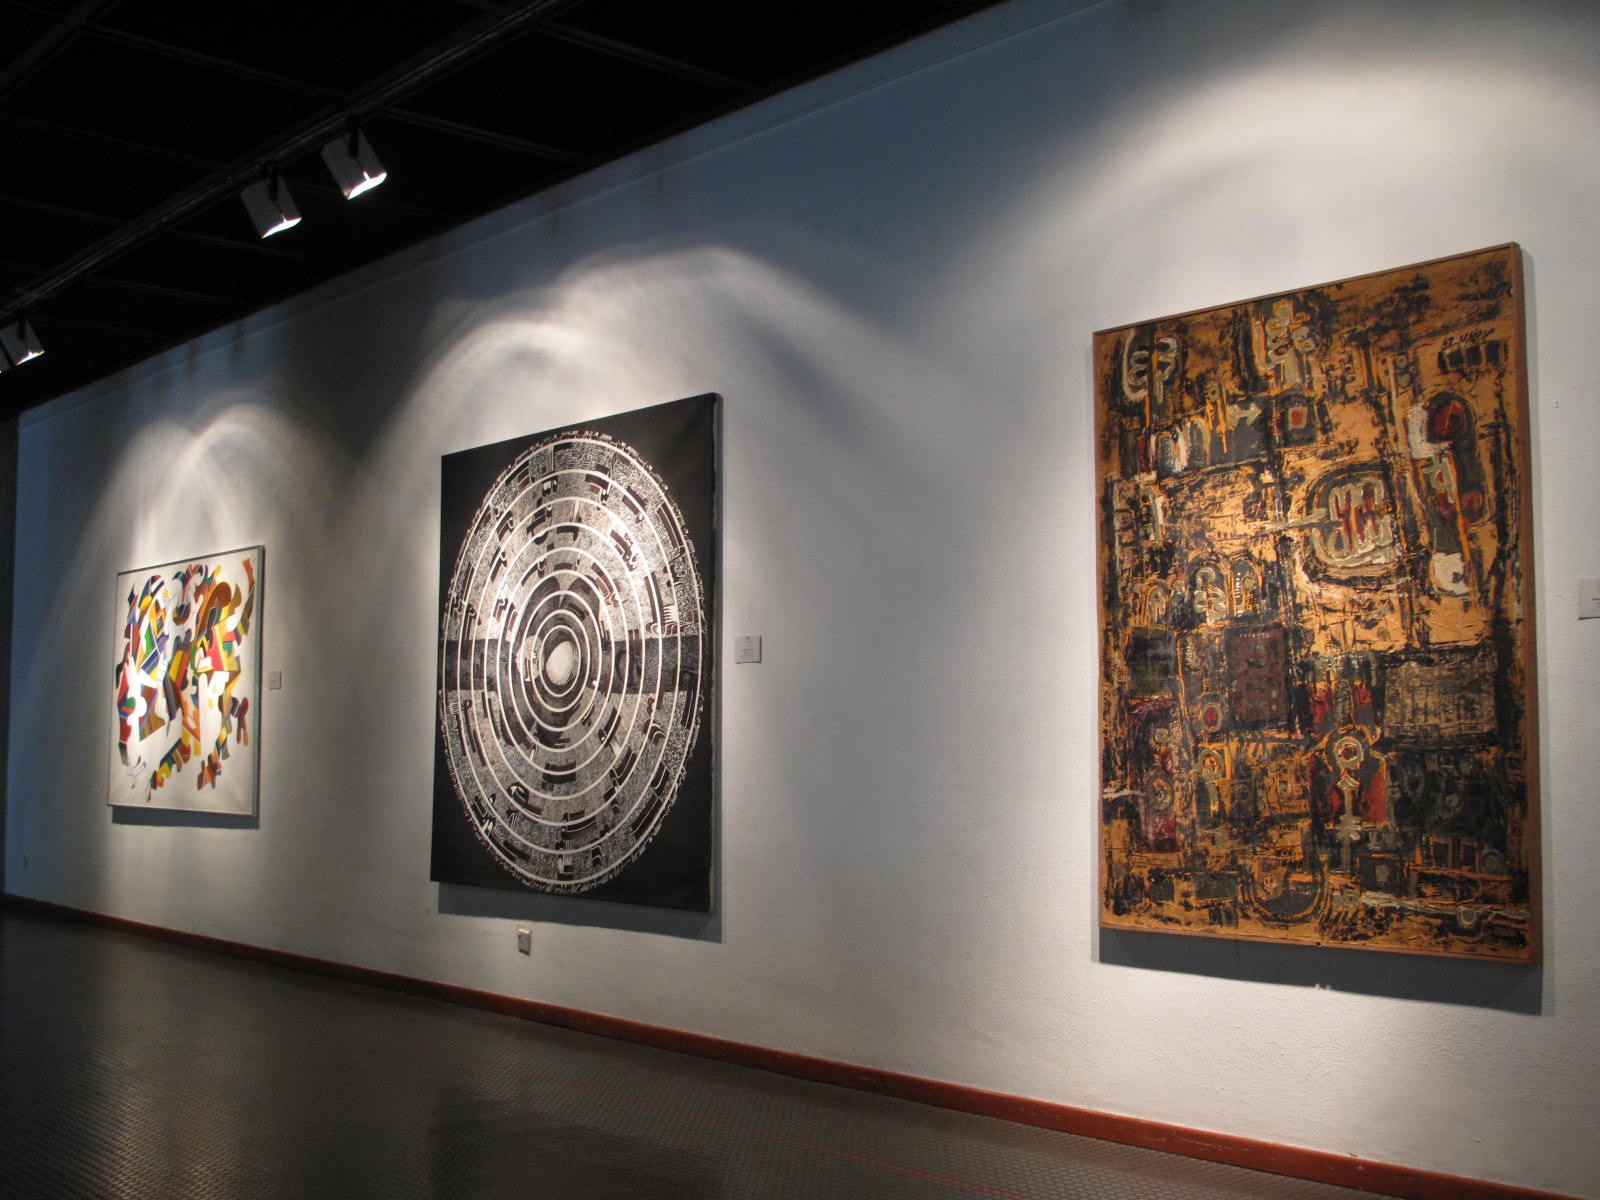 مقصد گنجینه موزه هنرهای معاصر از برلین به تهران تغییر کرد